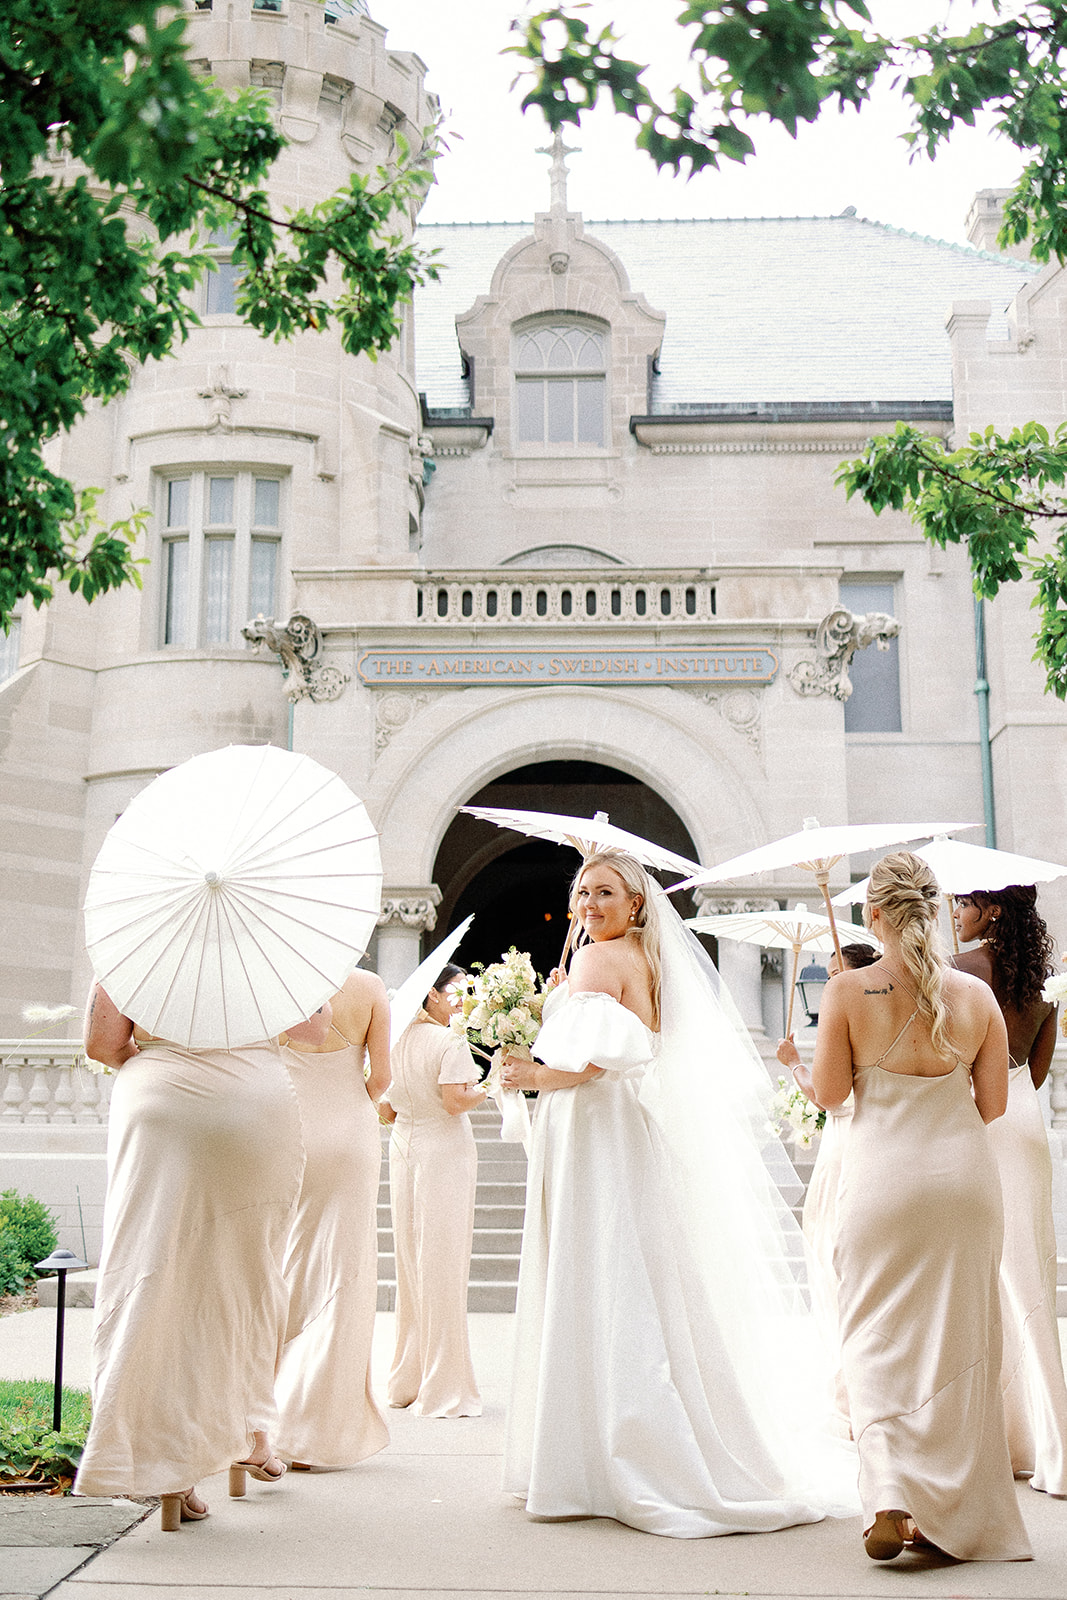 Bride with bridesmaid and parasol